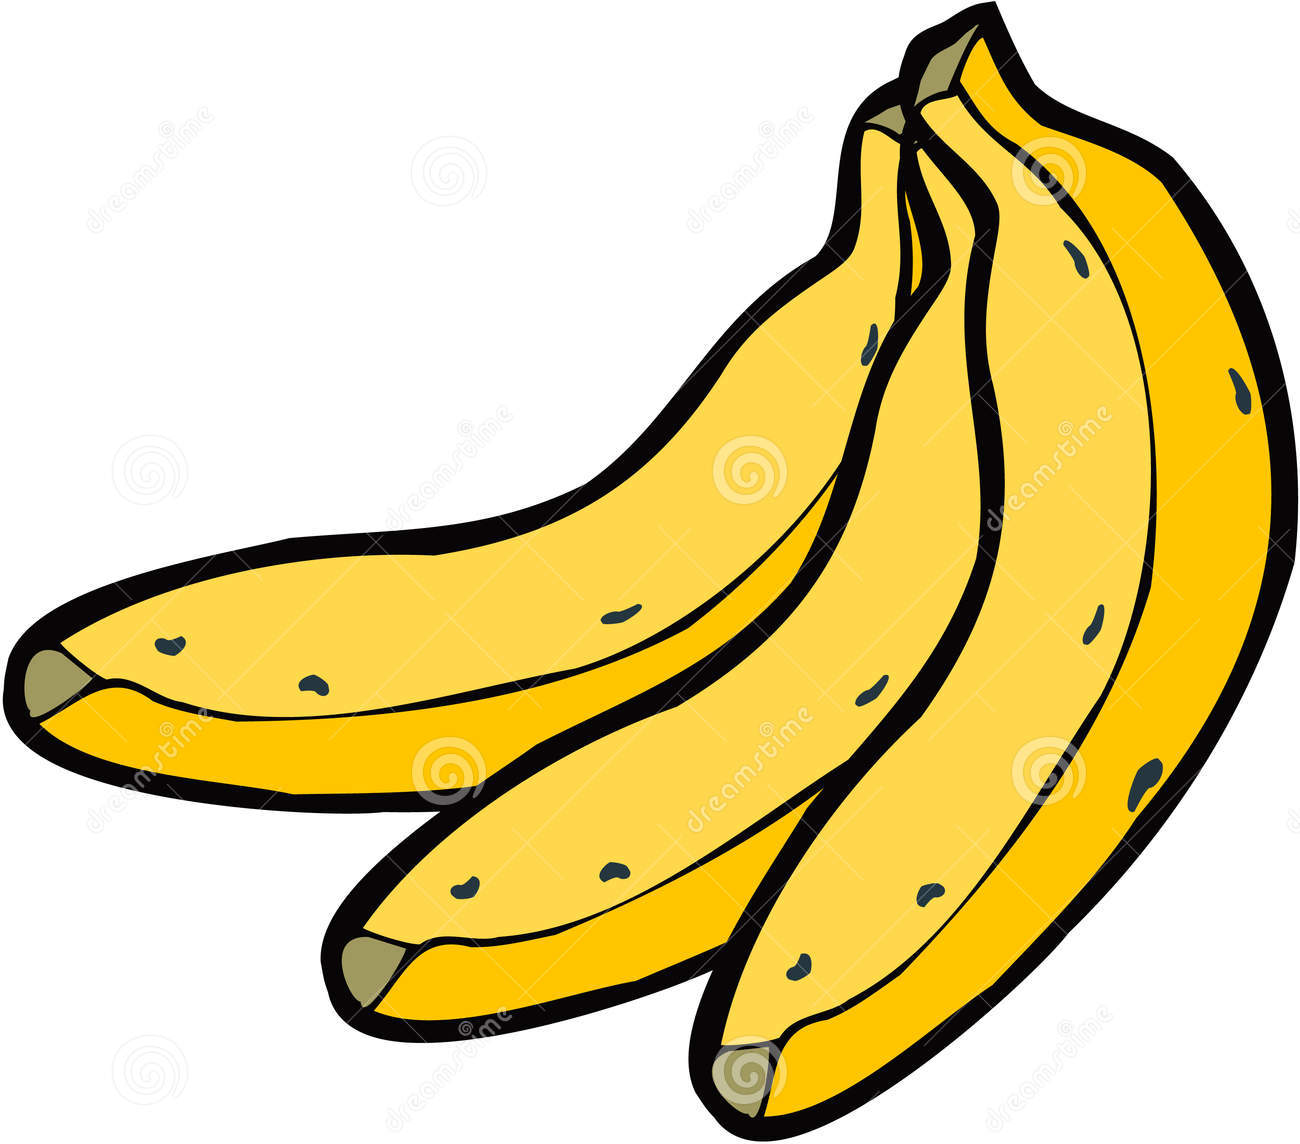 banana clipart black and whit - Bananas Clip Art